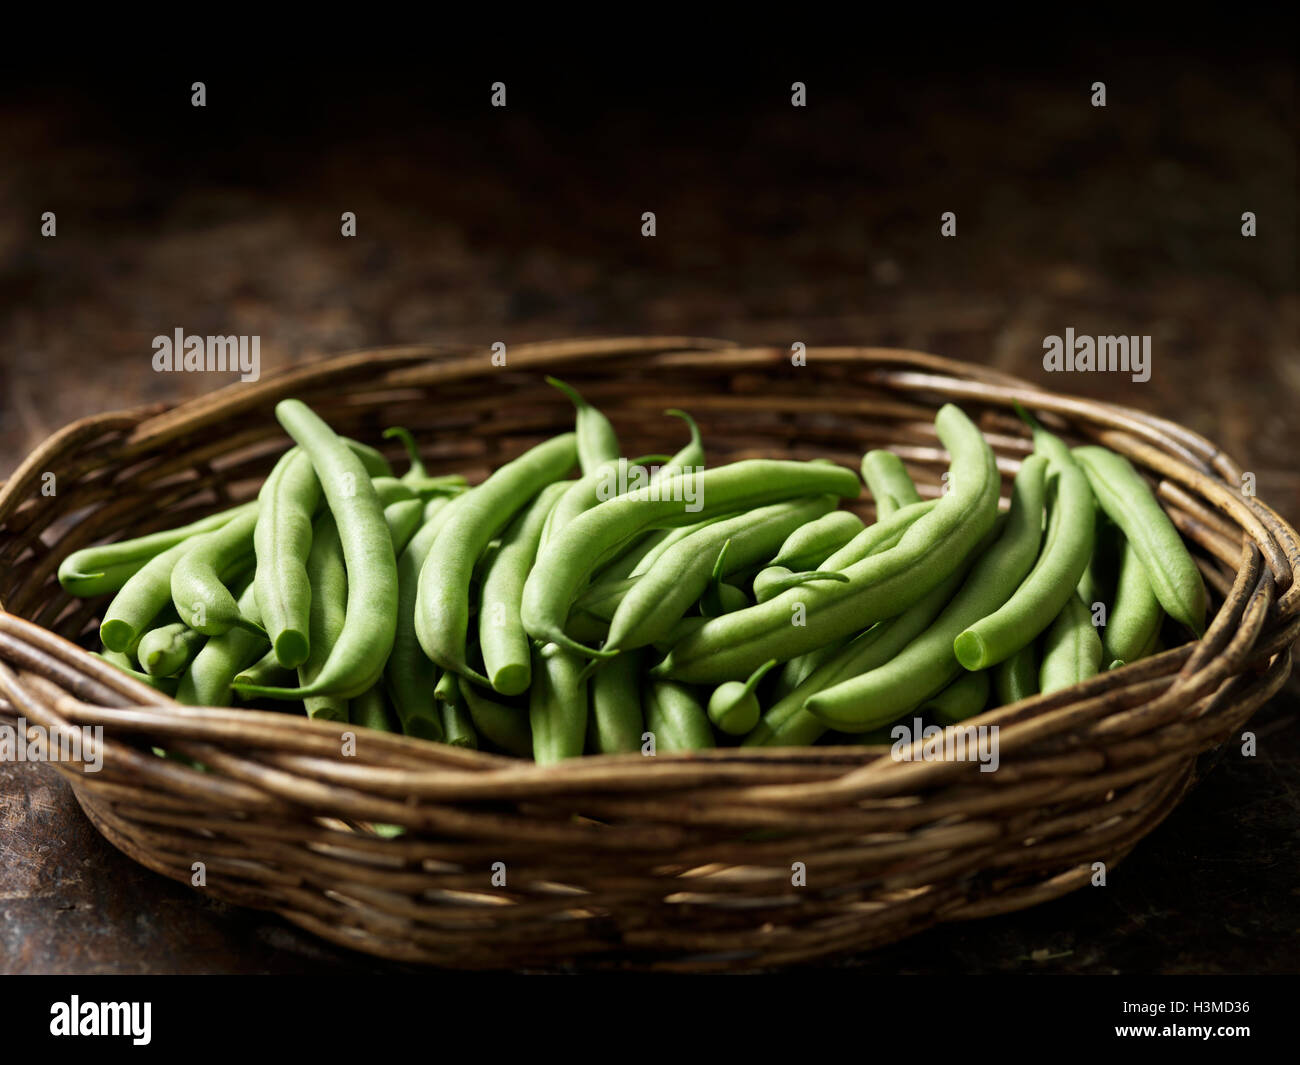 Hortalizas frescas orgánicas, Boston beans Foto de stock